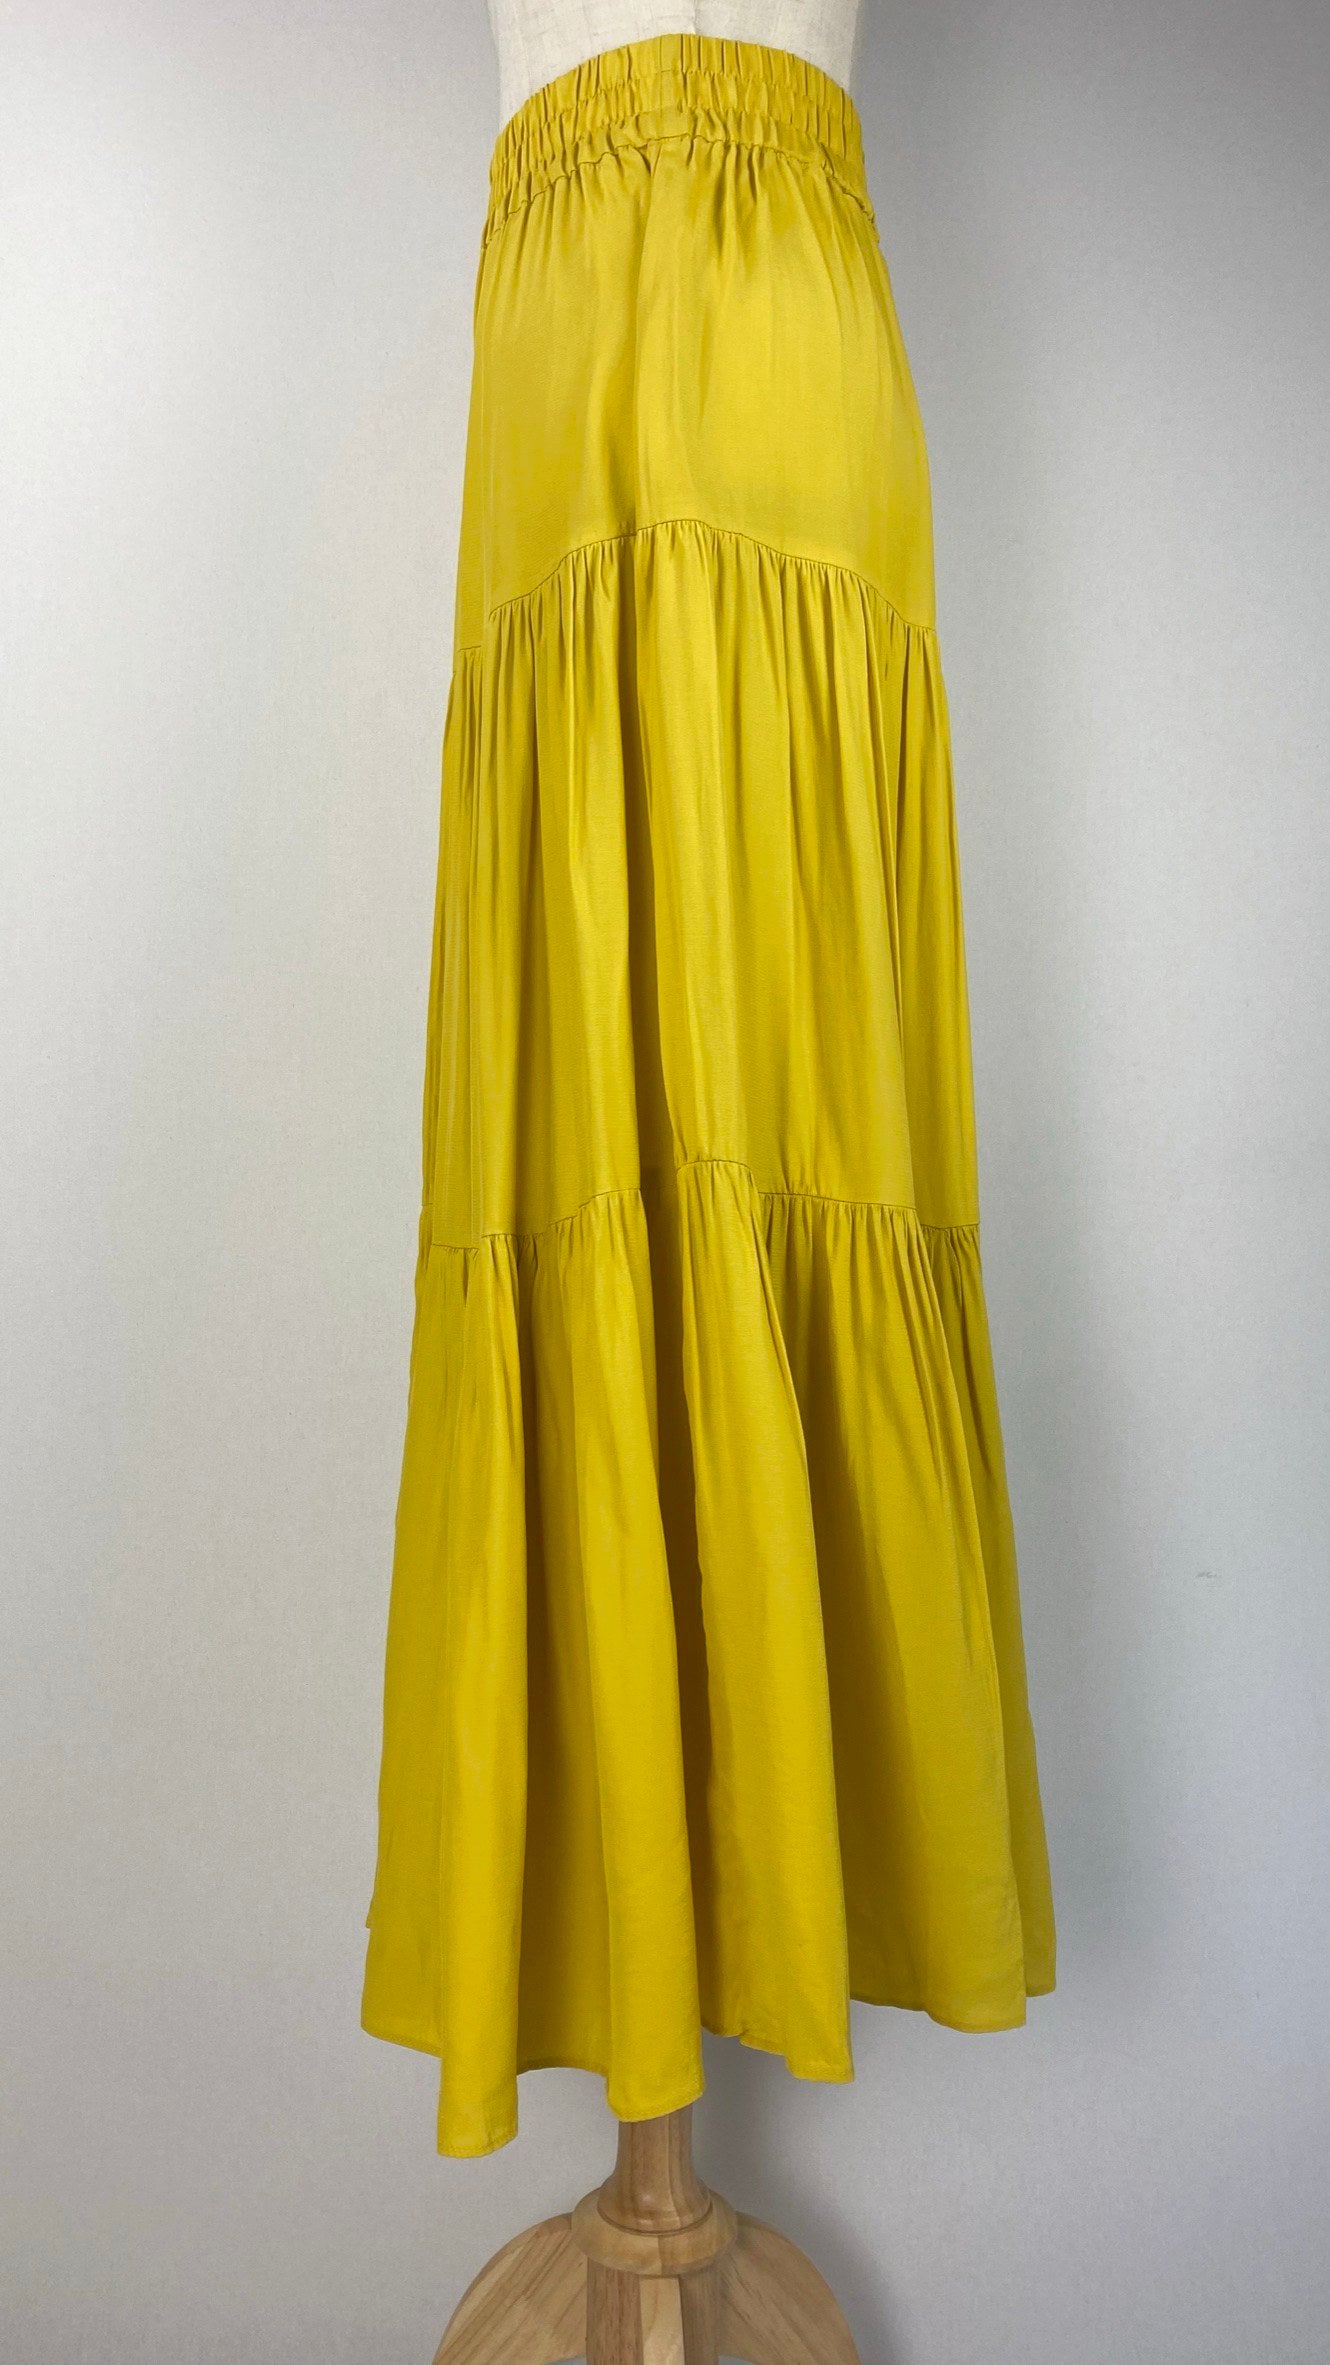 High Waist Maxi Skirt, Yellow